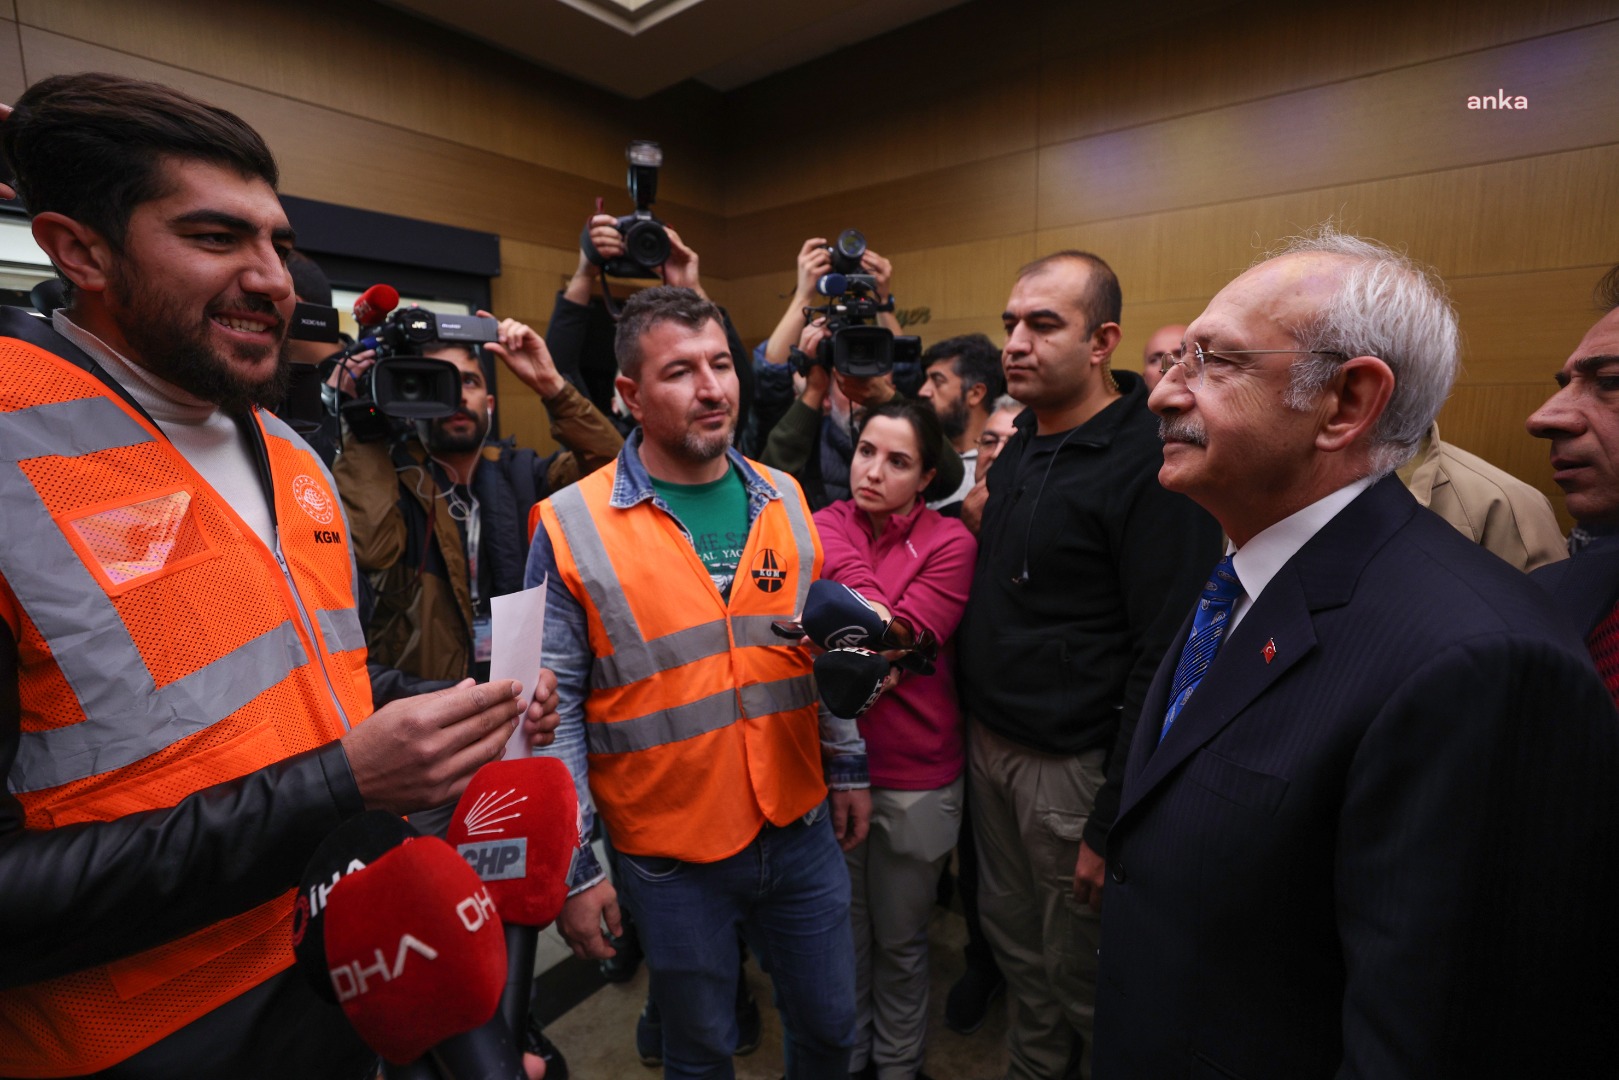 Kemal Kılıçdaroğlu Sivas'ta kadro bekleyen taşeron işçilerle görüştü: Devlet taşeron çalıştırmaz. Sizin için de mücadele edeceğim